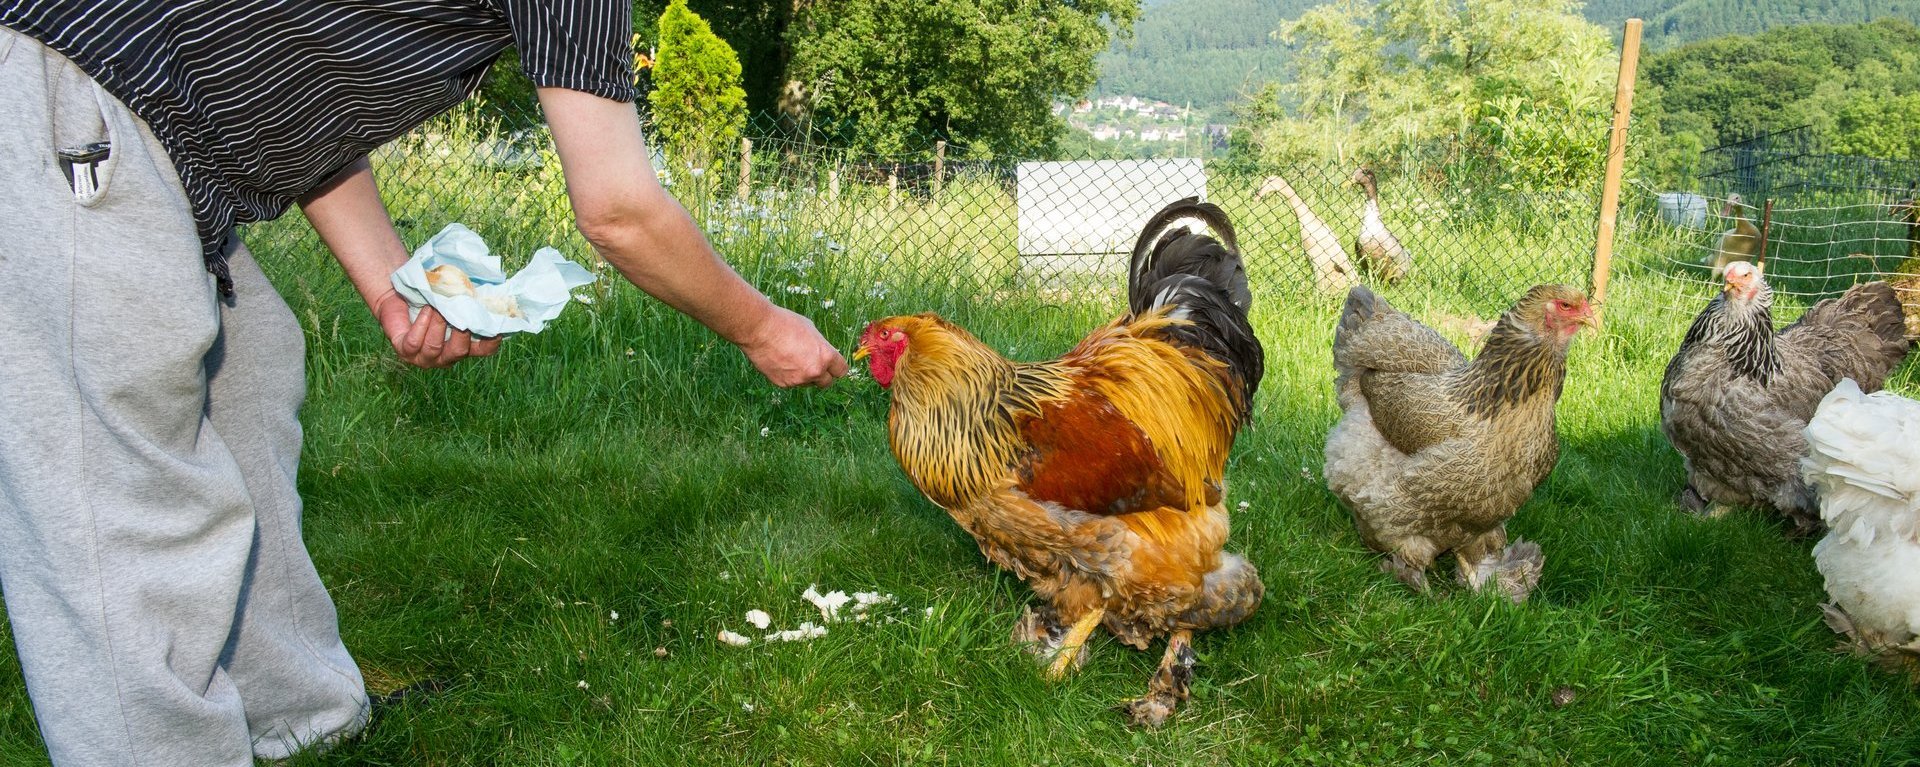 ein Mann füttert Hühner auf einer Wiese mit Brot